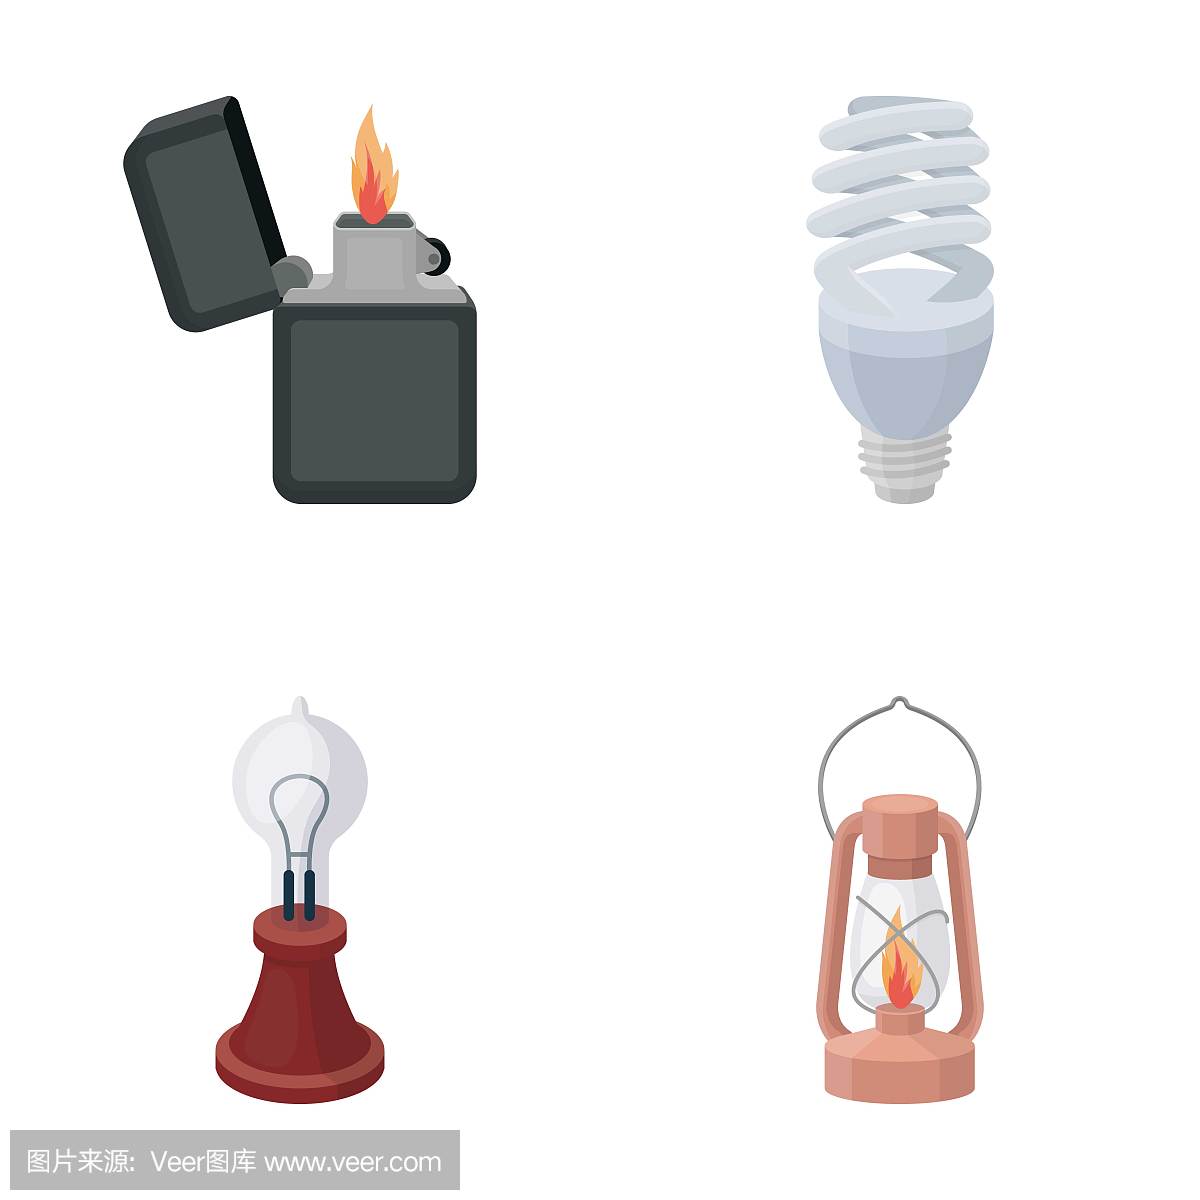 打火机,经济灯泡,爱迪生灯,煤油灯。光源设置集